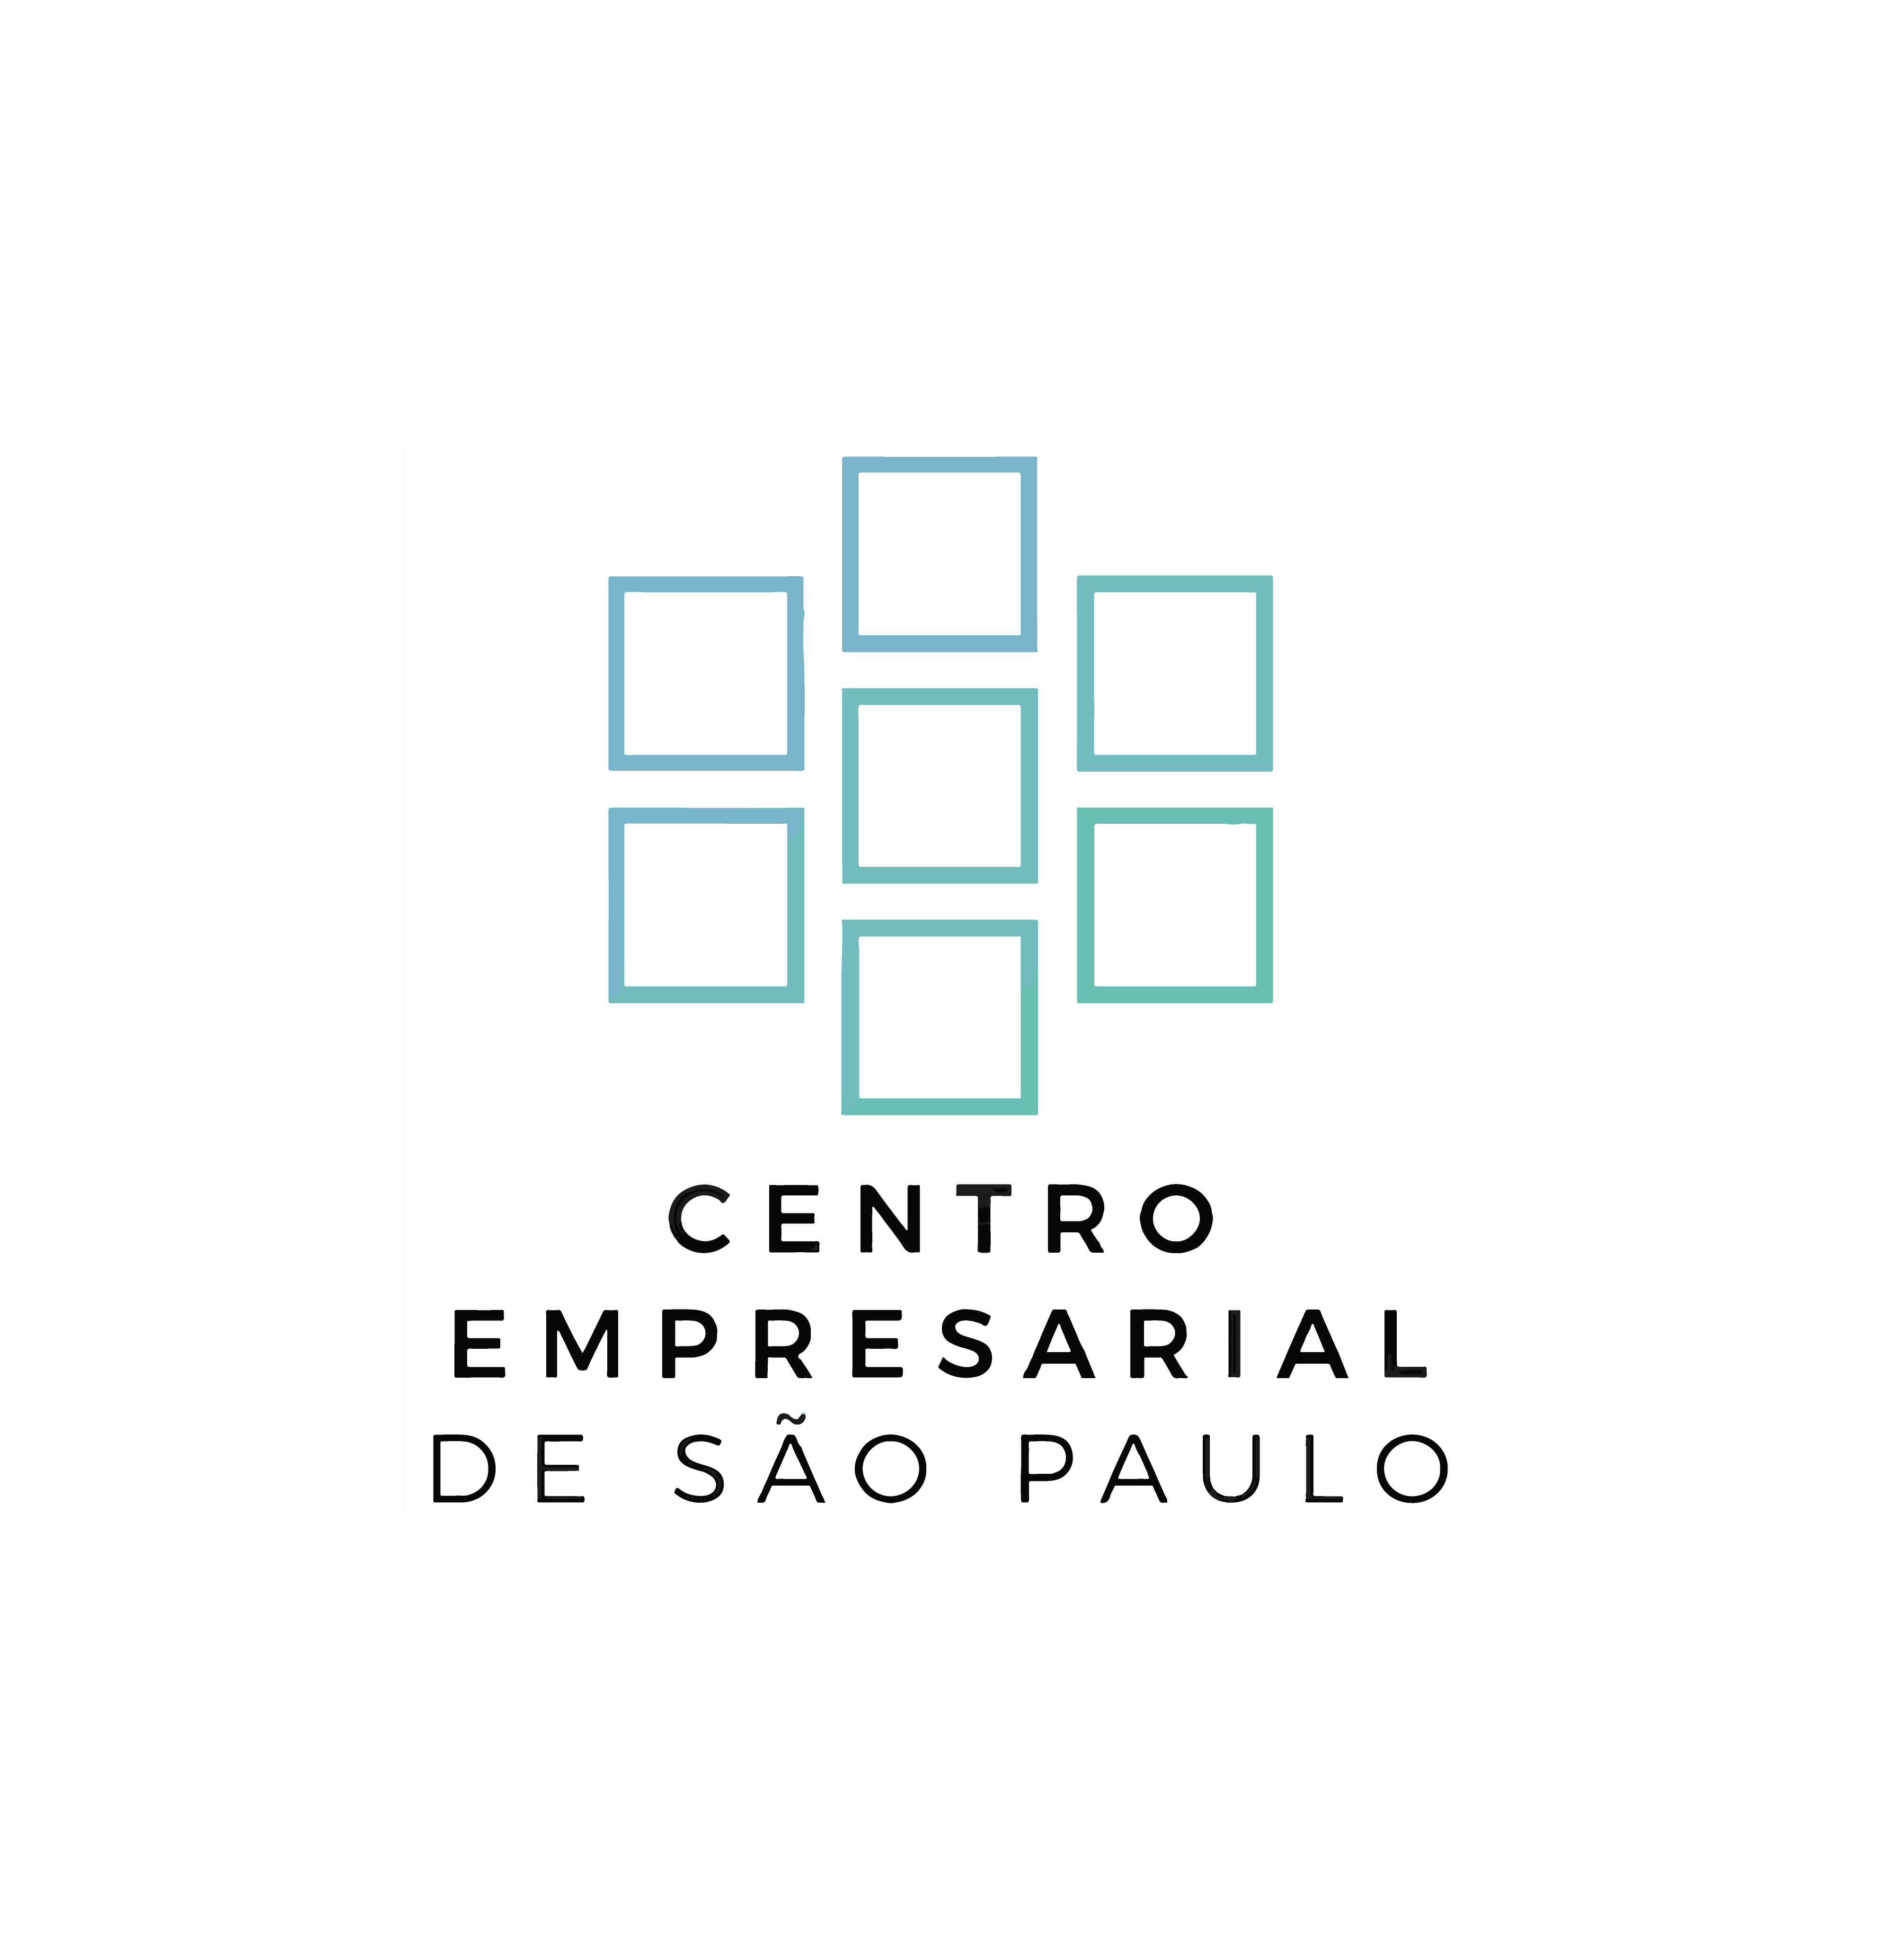 CENTRO EMPRESARIAL DE SÃO PAULO